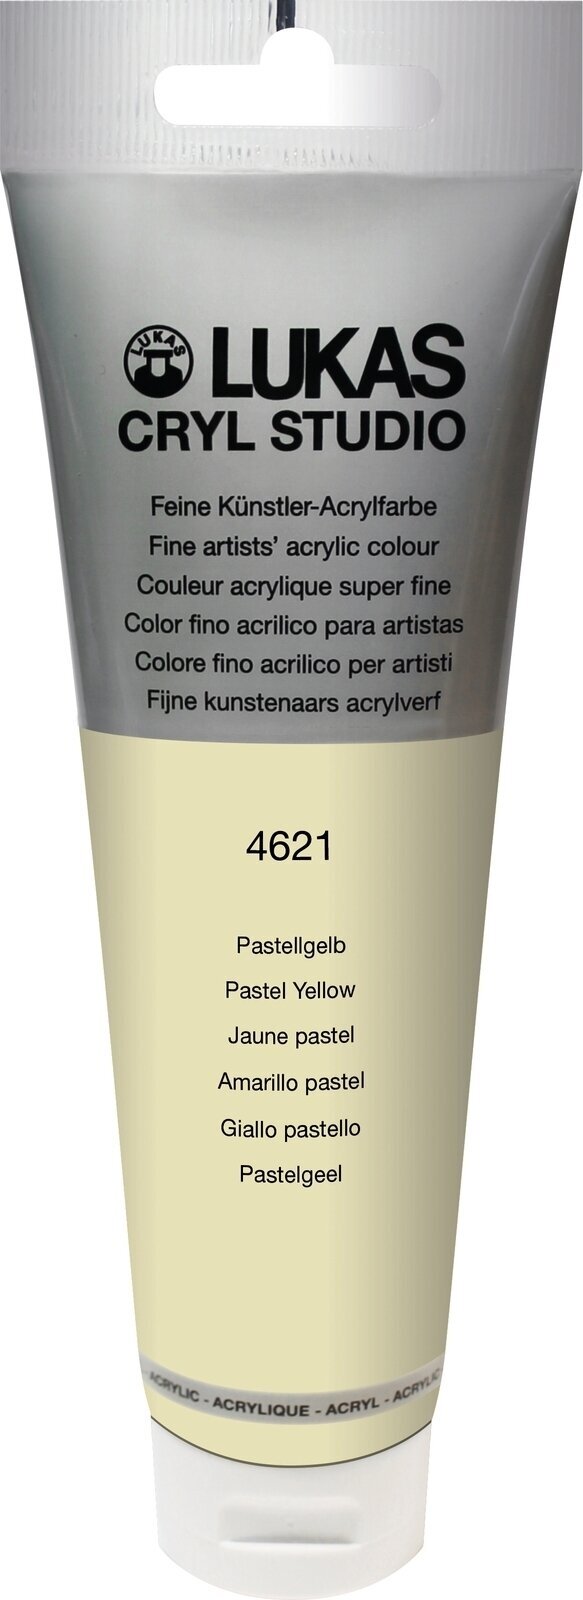 Akrylmaling Lukas Cryl Studio Acrylic Paint Plastic Tube Akrylmaling Pastel Yellow 125 ml 1 stk.